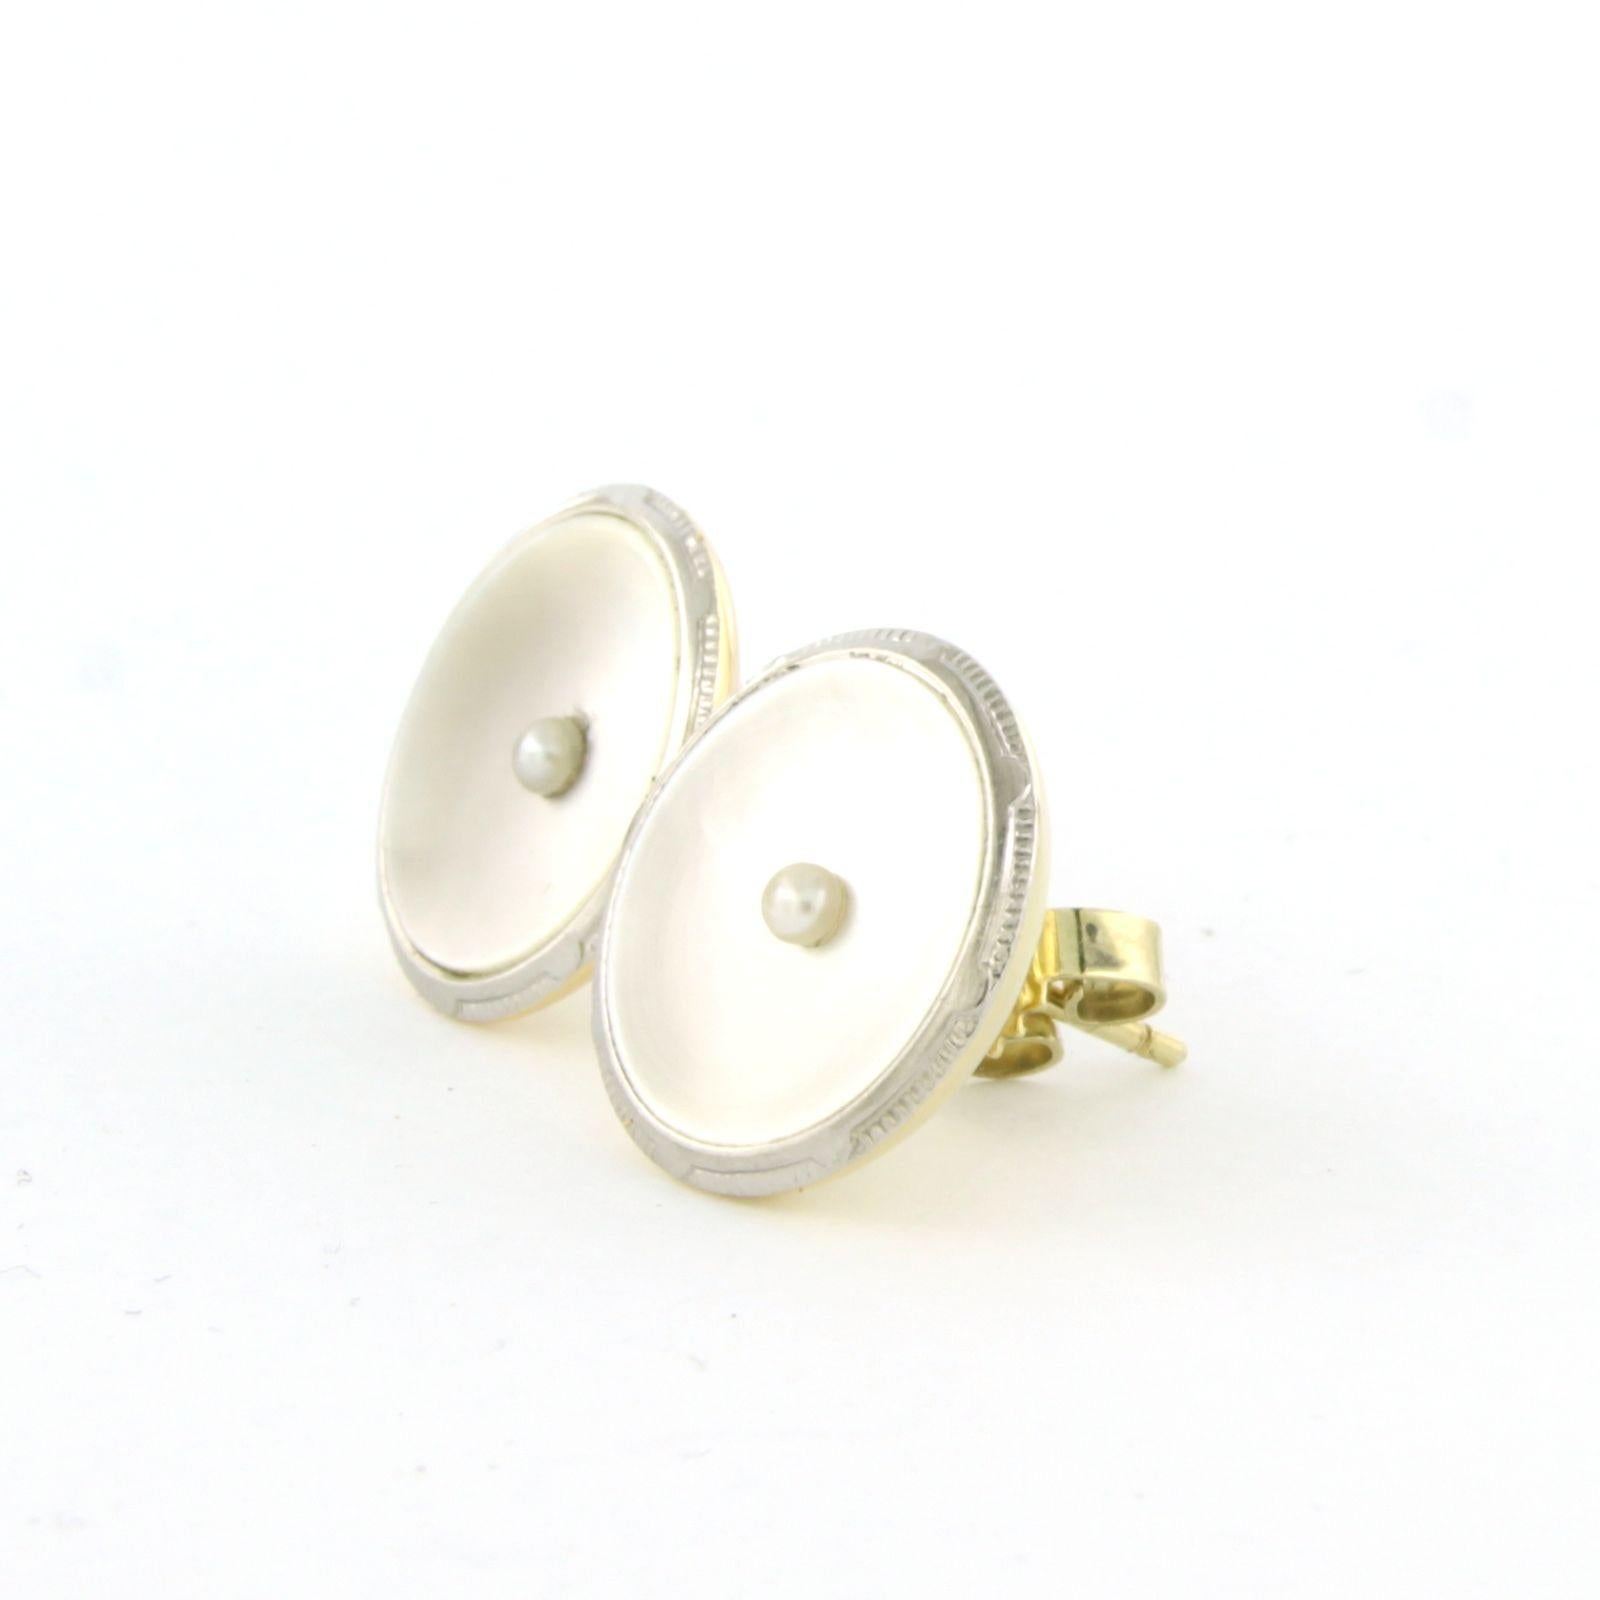 Ohrringe aus 14k Bicolor-Gold mit Perle und Perlmutt - Durchmesser 1,5 cm

Ausführliche Beschreibung:

der Durchmesser des Ohrsteckers ist 1.5 cm breit

Gesamtgewicht 4.8 Gramm

gesetzt mit

- 2 x 1,3 cm rundes Perlmutt

Farbe Weiß
Reinheit